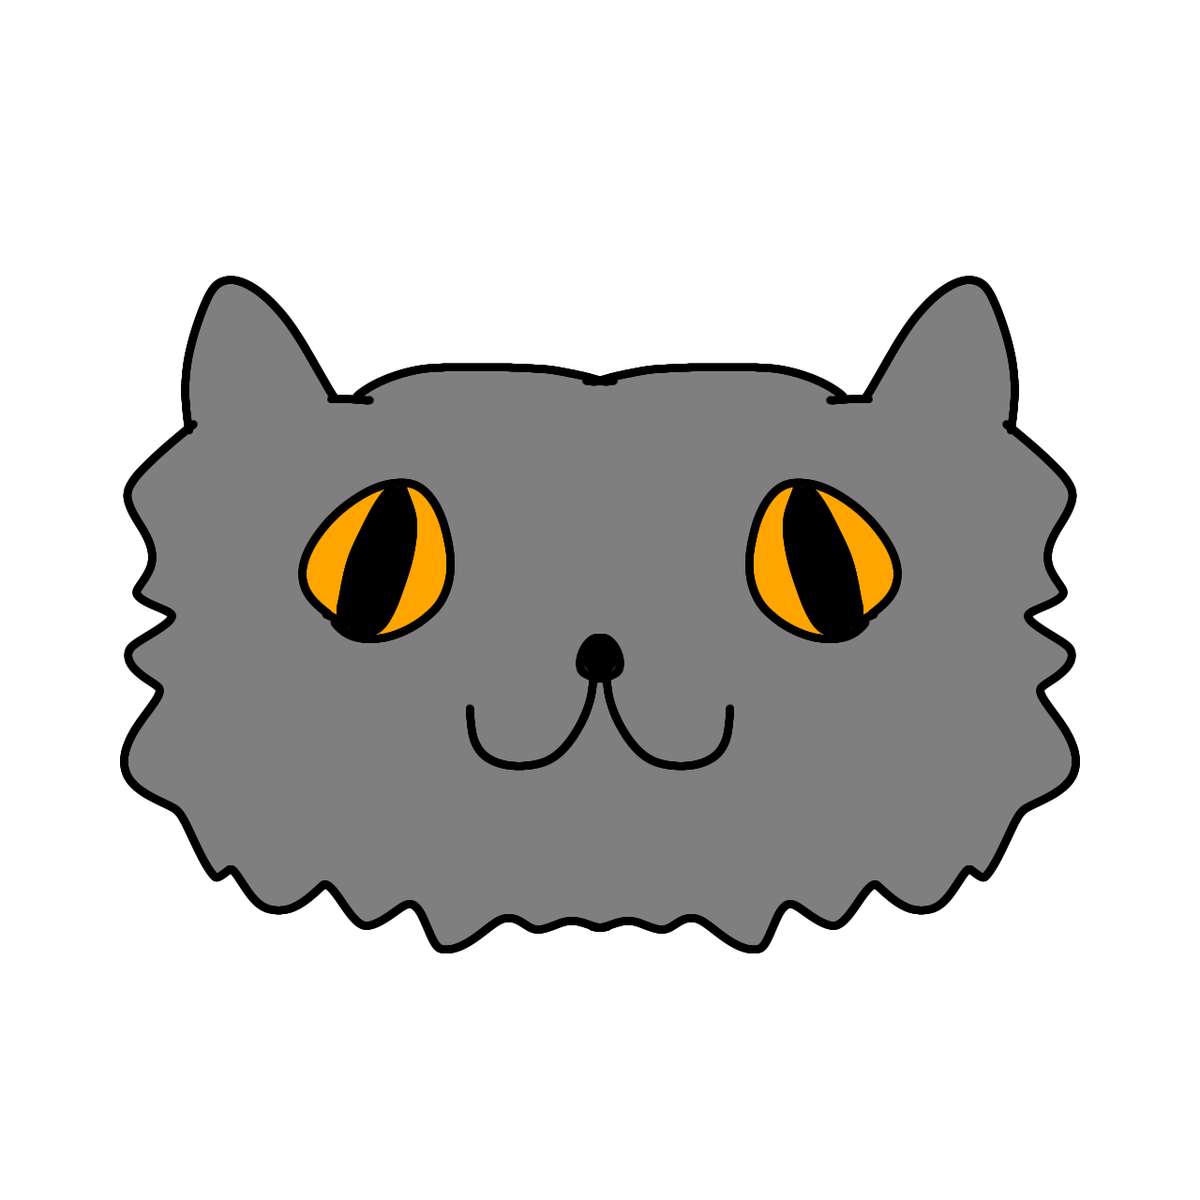 Szary kot o bursztynowych oczach (Sirosmug) puzzle online